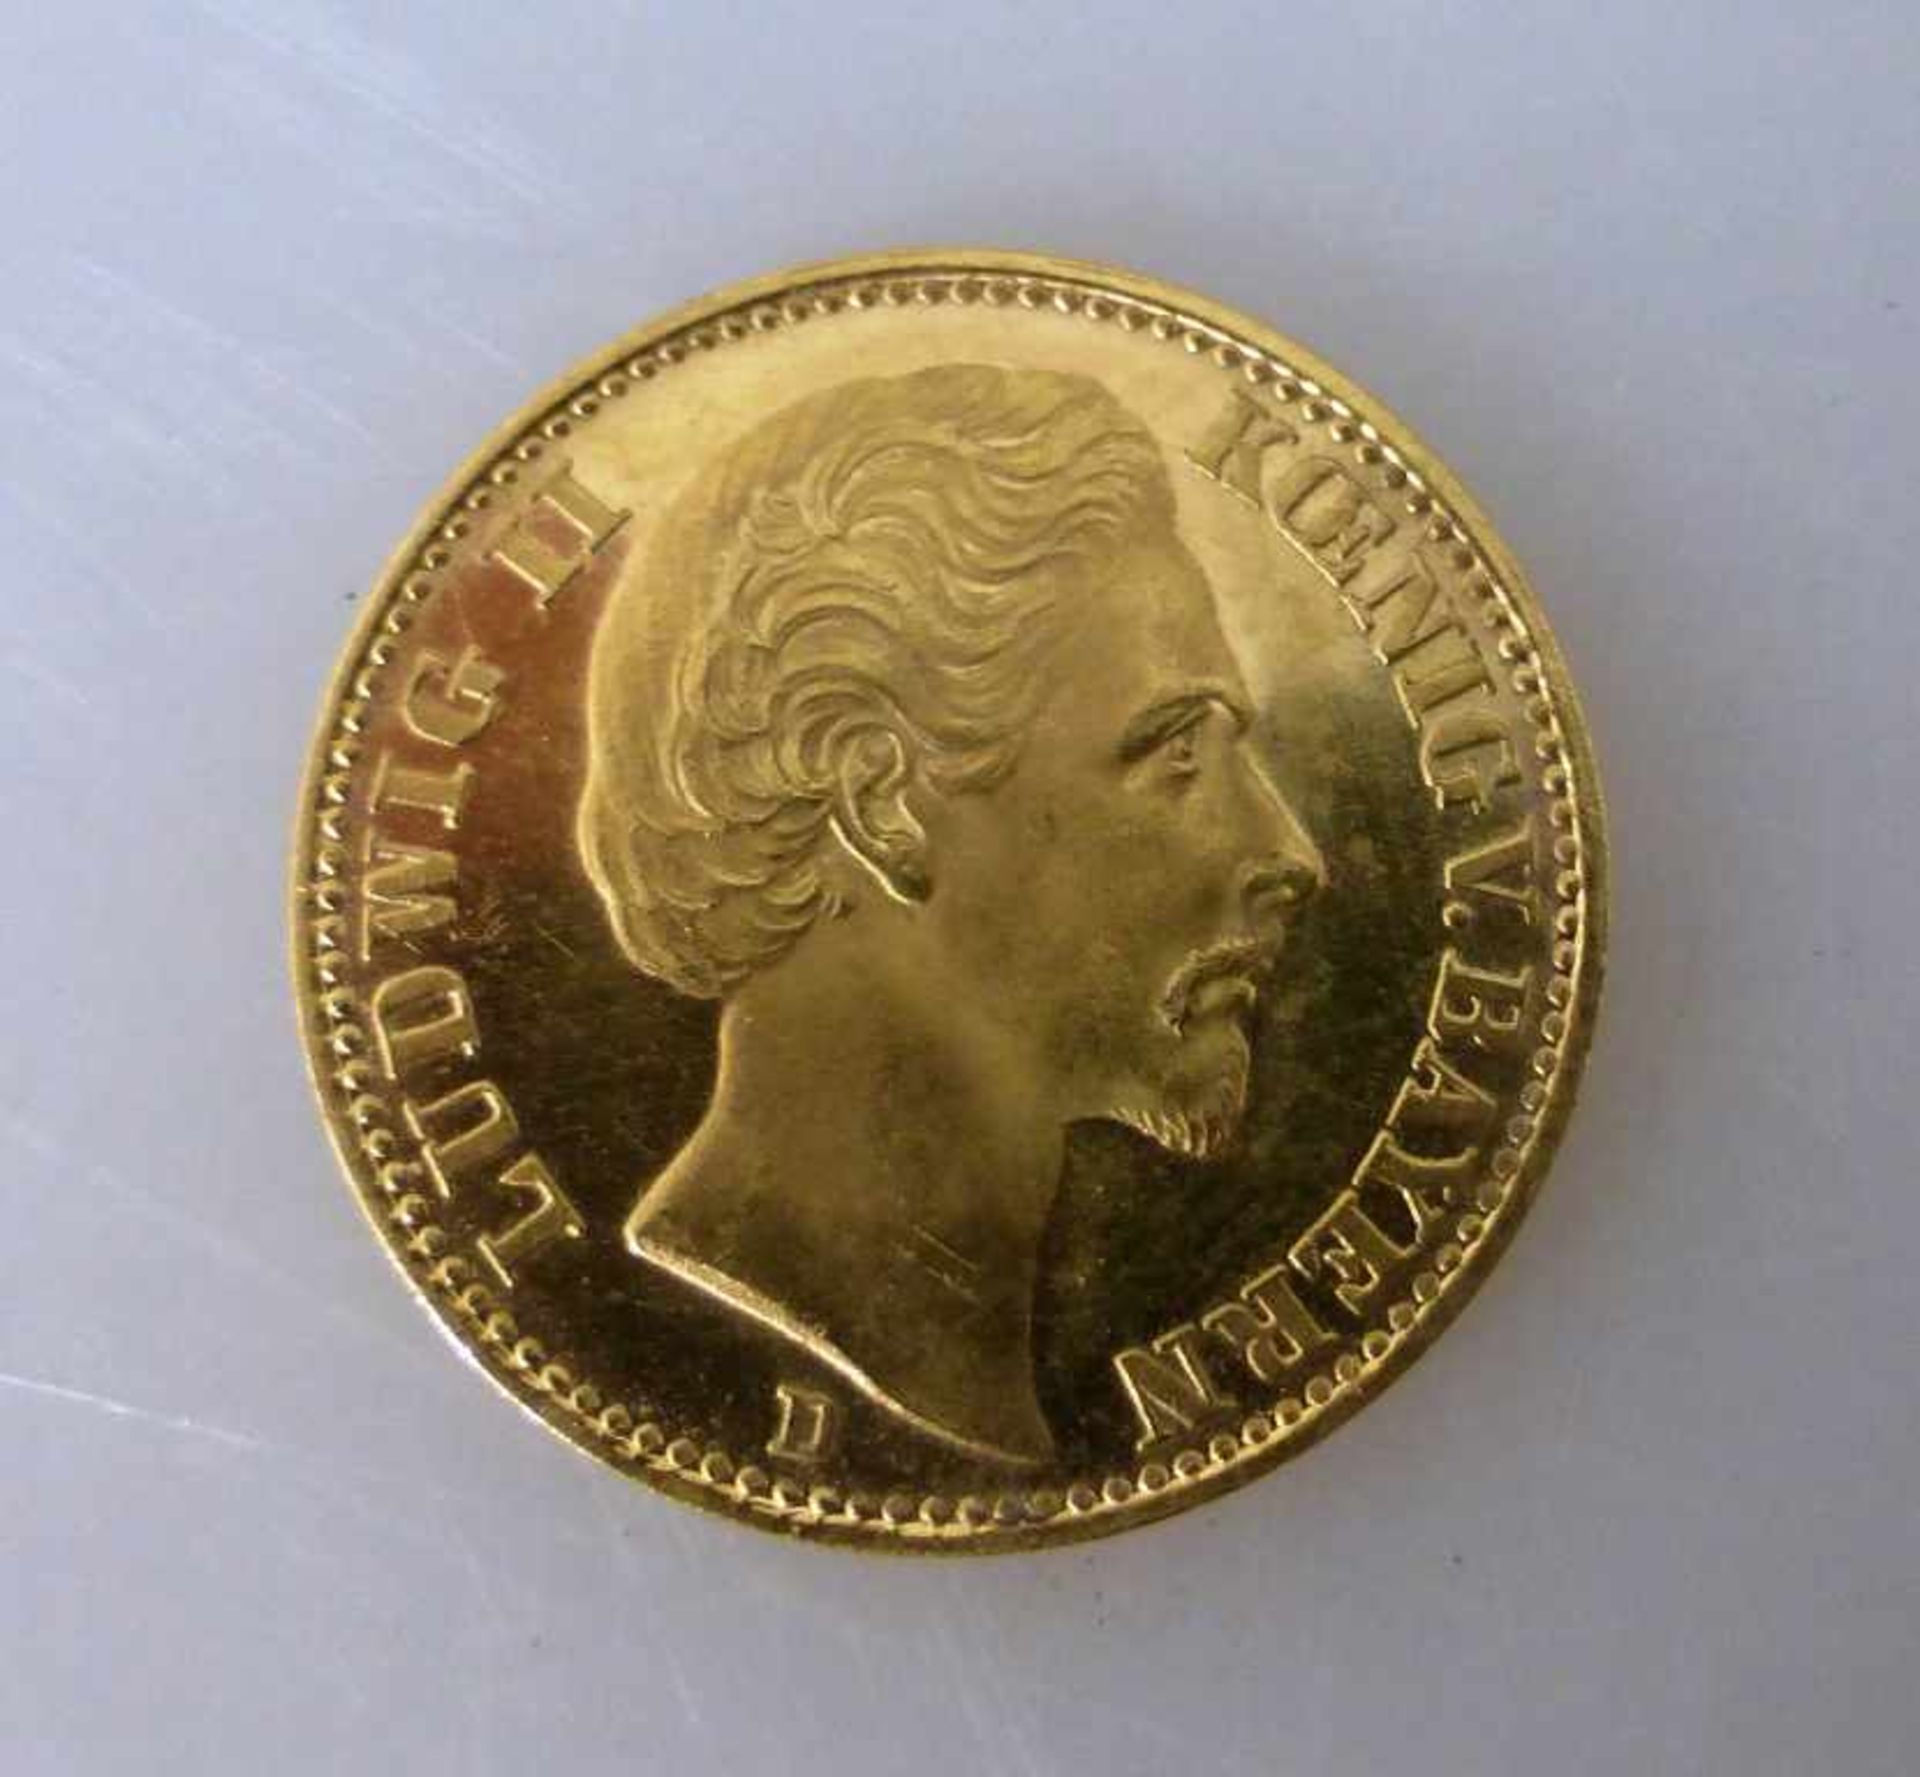 Goldmünze, 20 Mark, Kaiserreich, 1873, Ludwig II. König von Bayern, Prägemarke D